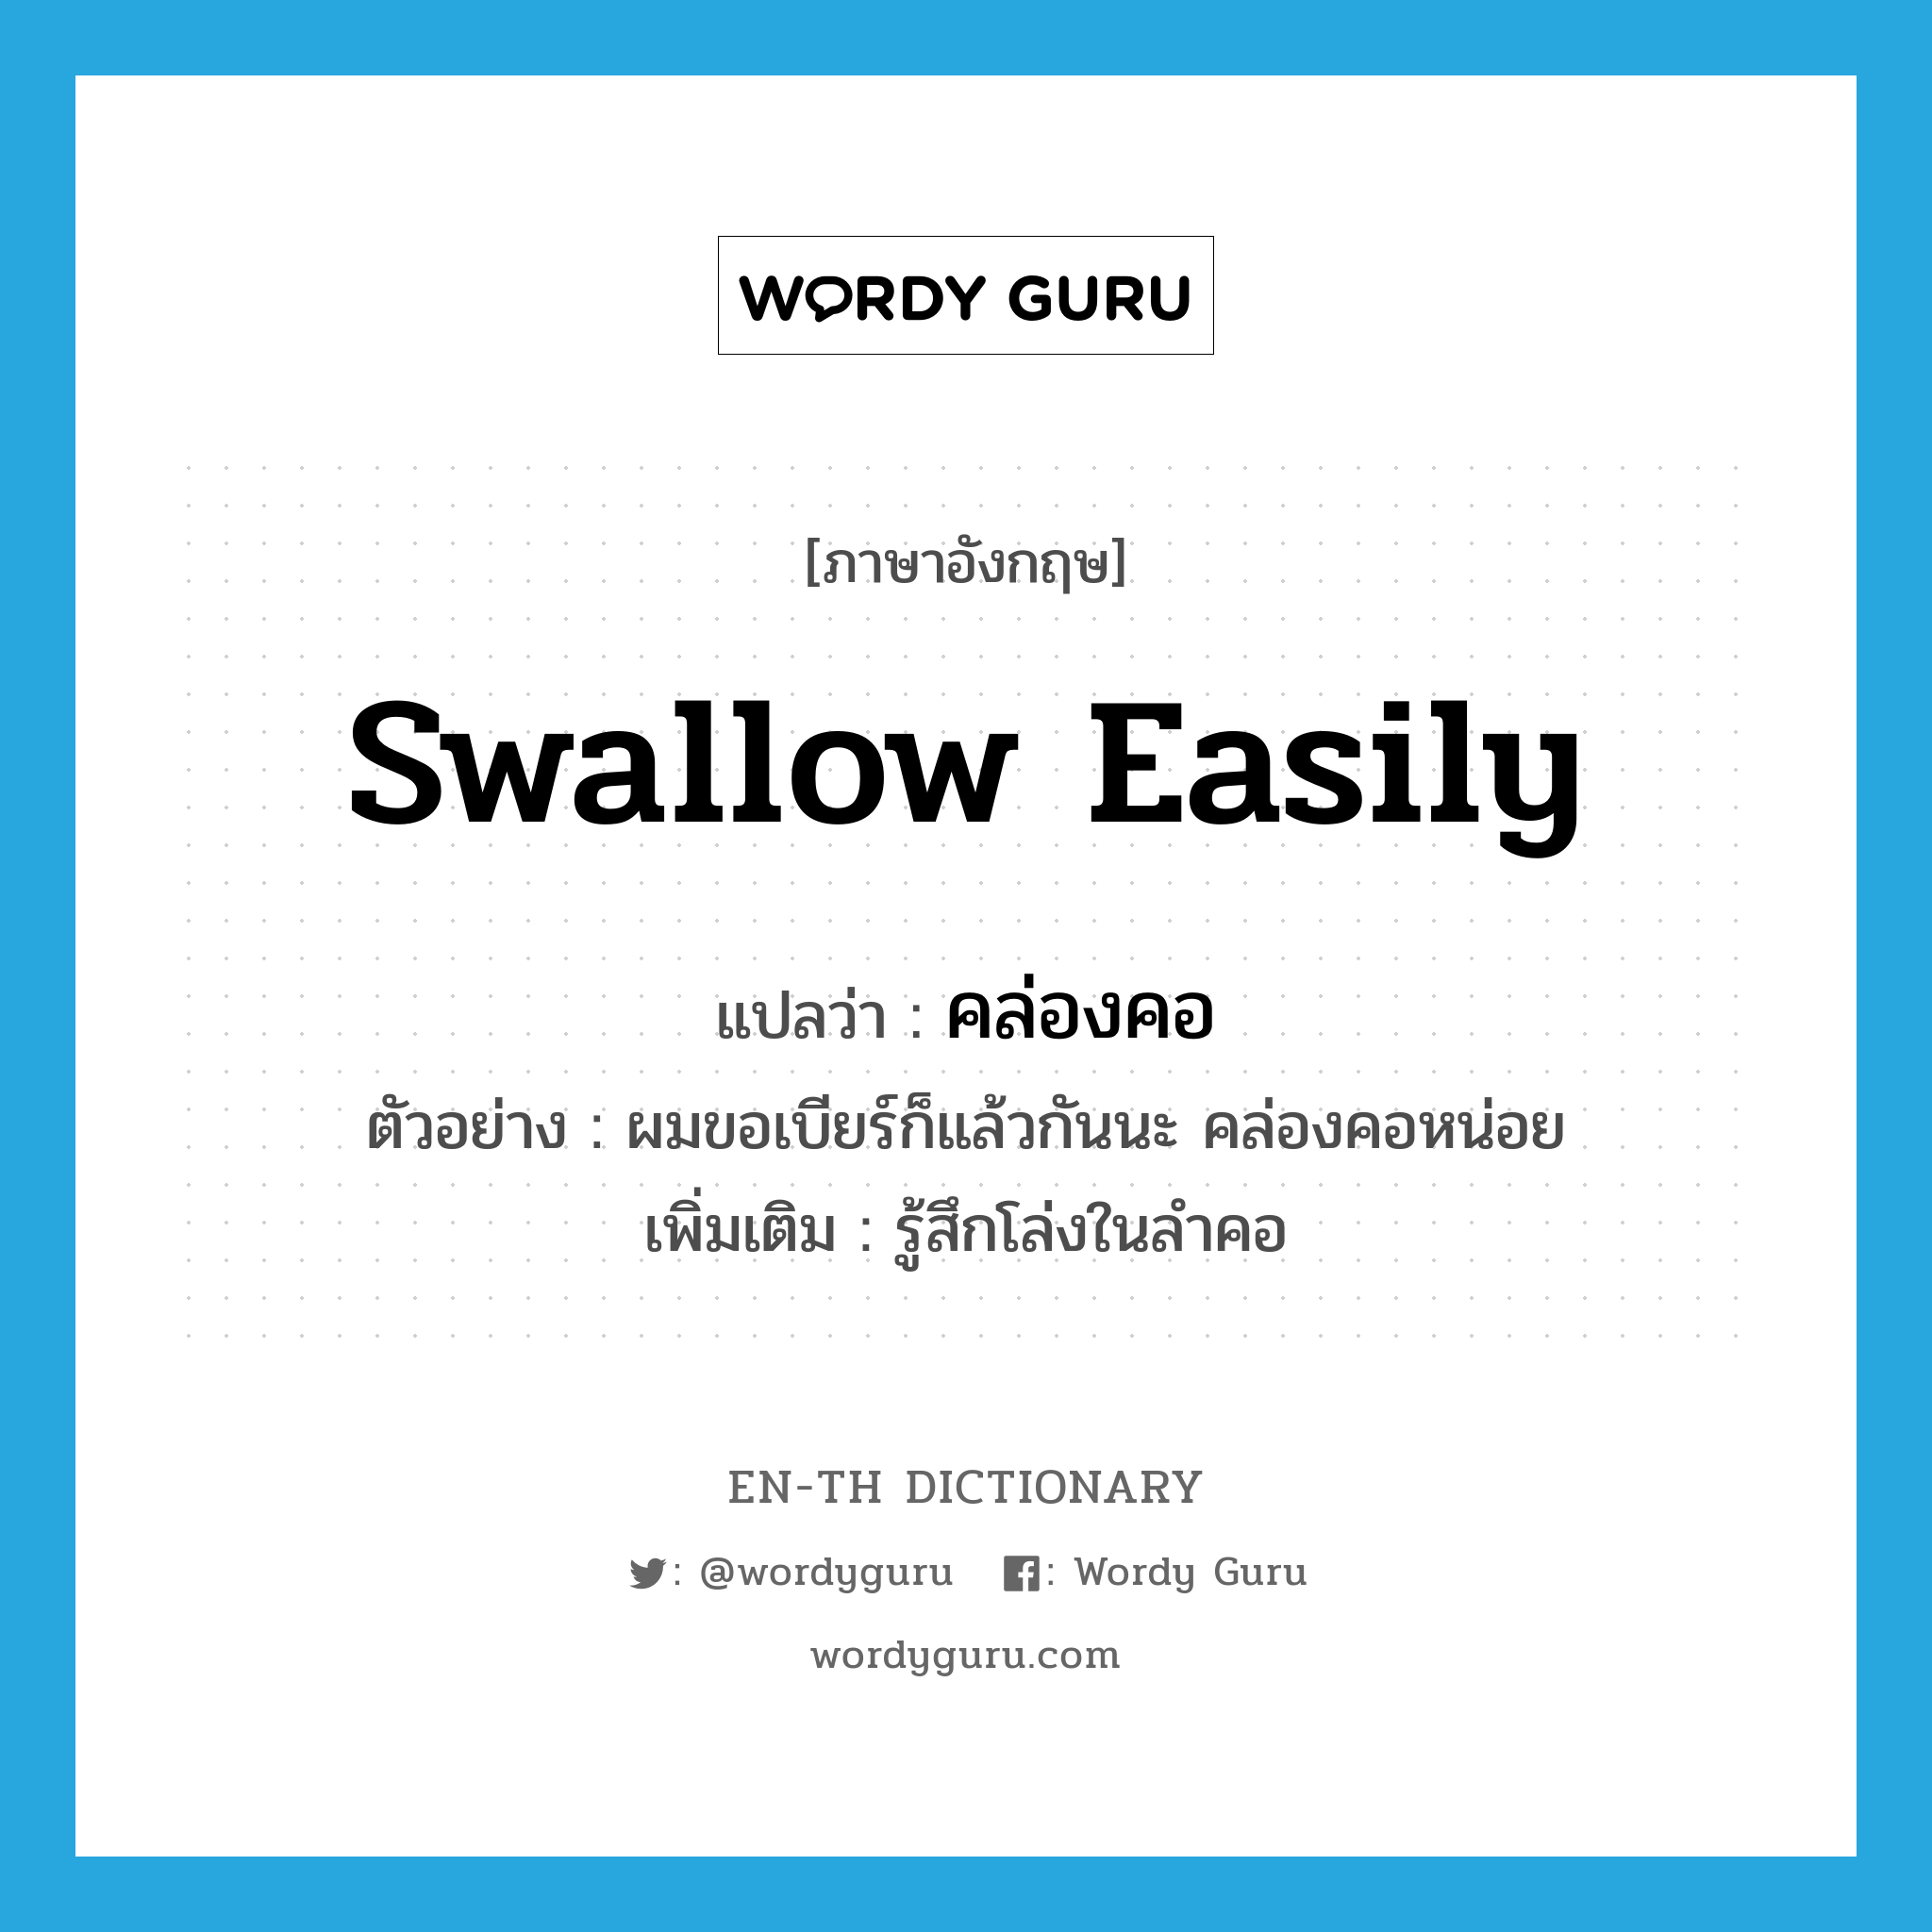 swallow easily แปลว่า?, คำศัพท์ภาษาอังกฤษ swallow easily แปลว่า คล่องคอ ประเภท V ตัวอย่าง ผมขอเบียร์ก็แล้วกันนะ คล่องคอหน่อย เพิ่มเติม รู้สึกโล่งในลำคอ หมวด V